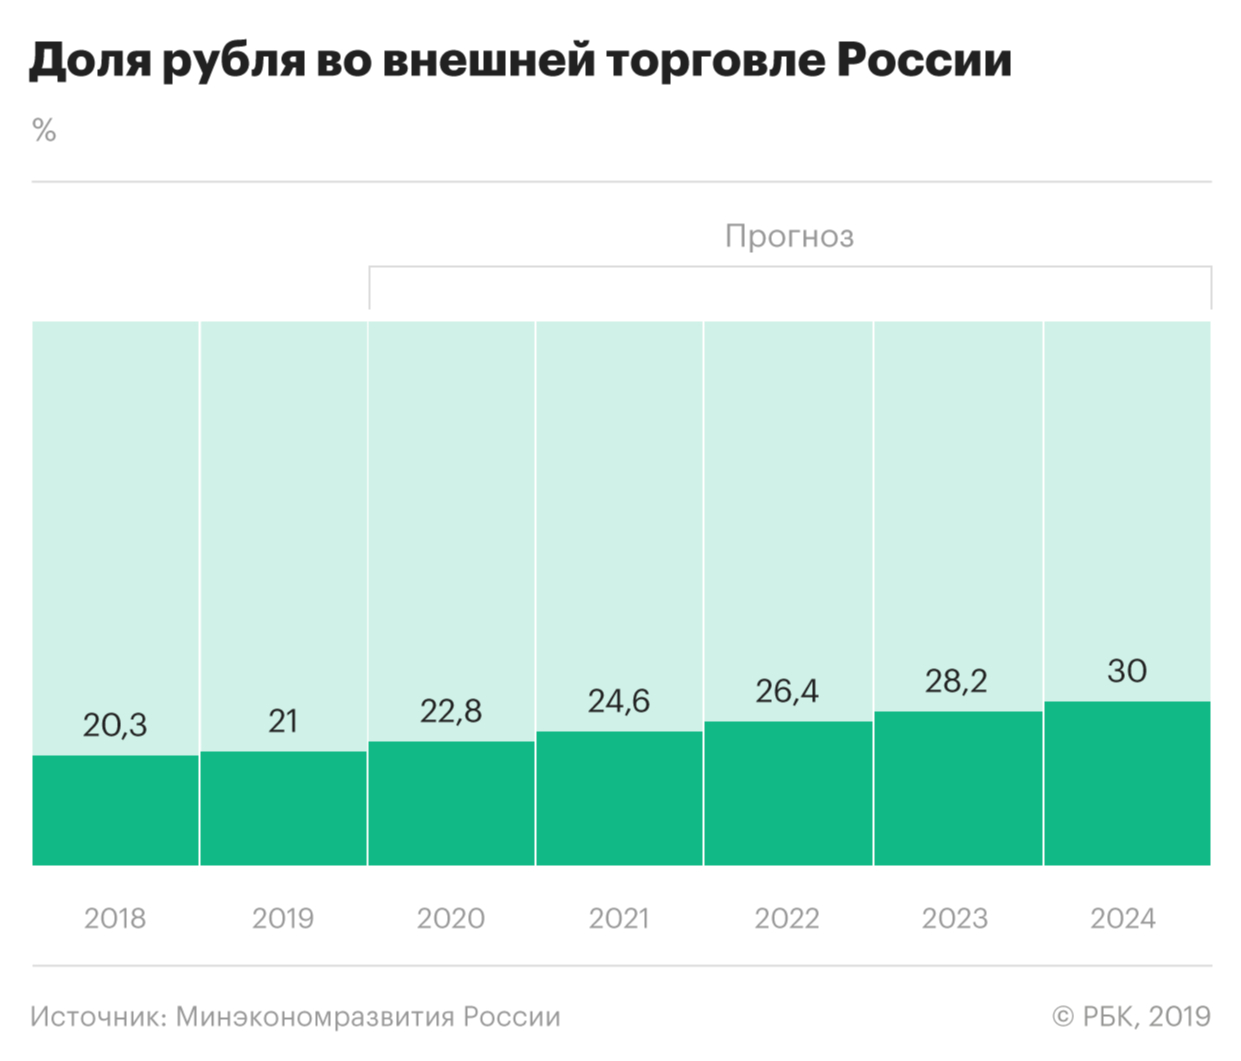 Власти запланировали поднять долю рубля во внешней торговле до 30%